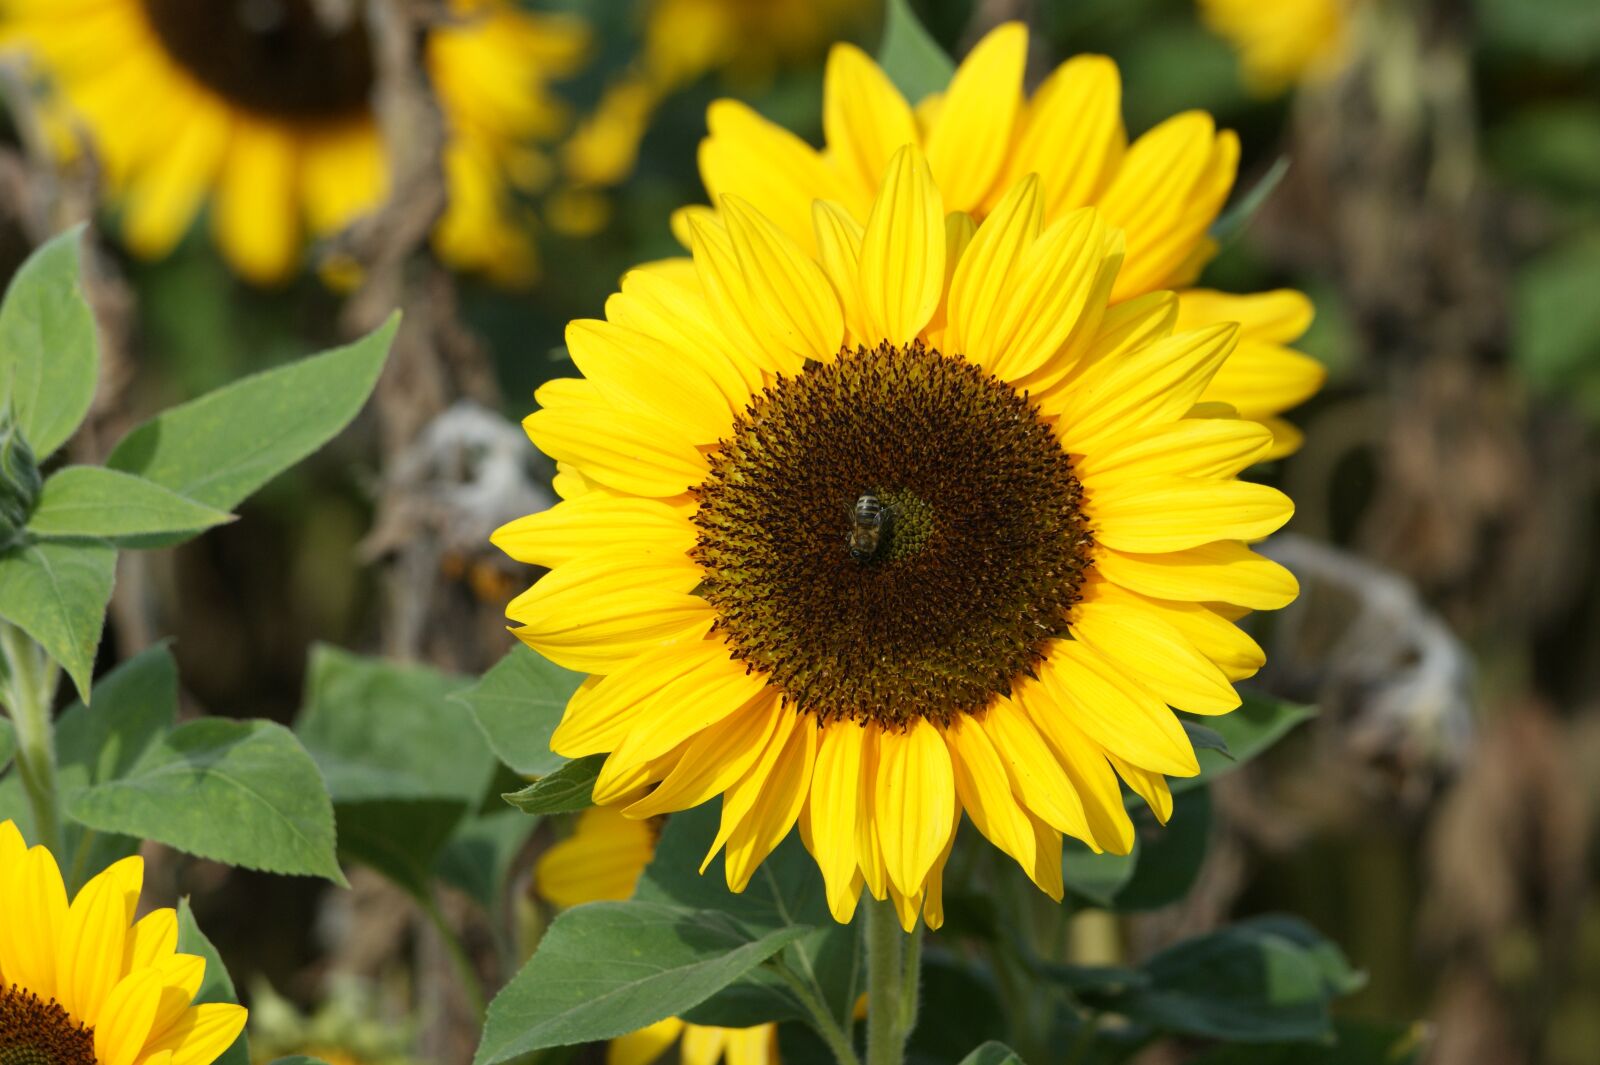 Sony Alpha DSLR-A350 sample photo. Sunflower, flower, sun photography